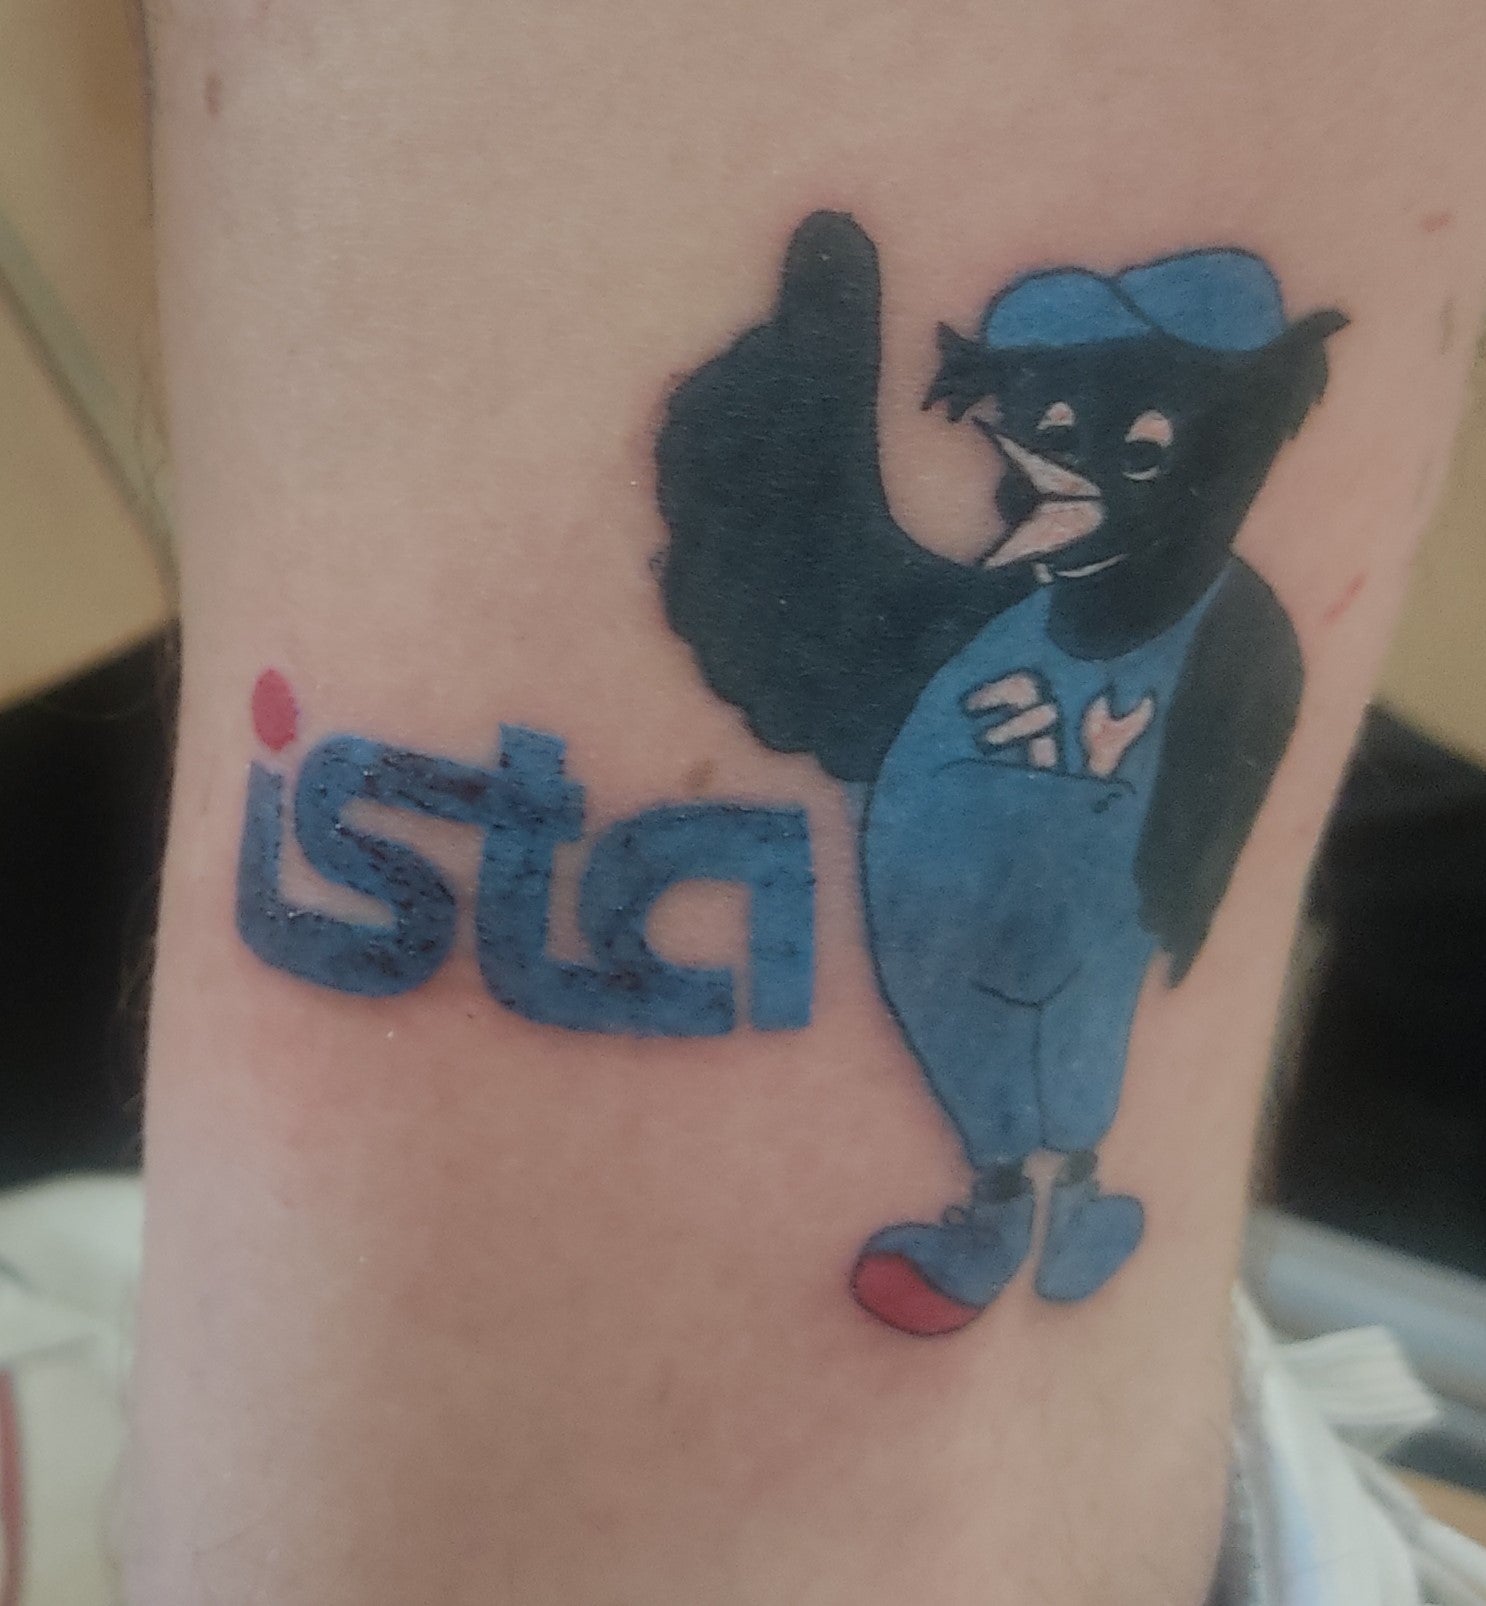 In den weiteren Bildern sieht man ein ista Tattoo, auf dem das alte ista Logo und eine als Handwerker verkleidete Drossel abgebildet sind. 